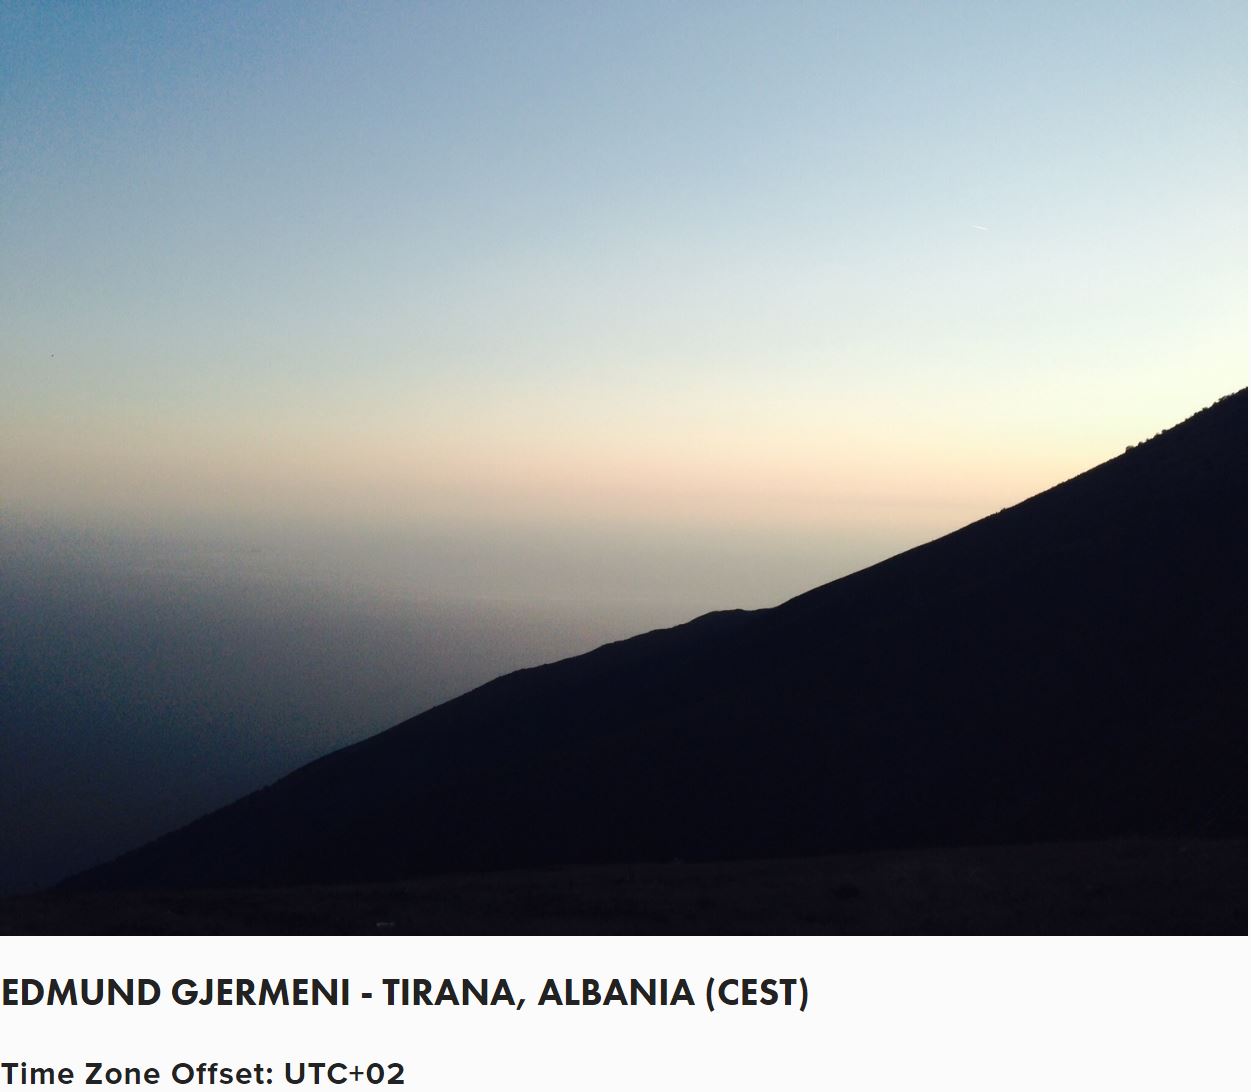 05 Edmund Gjermeni - Tirana, Albania.JPG